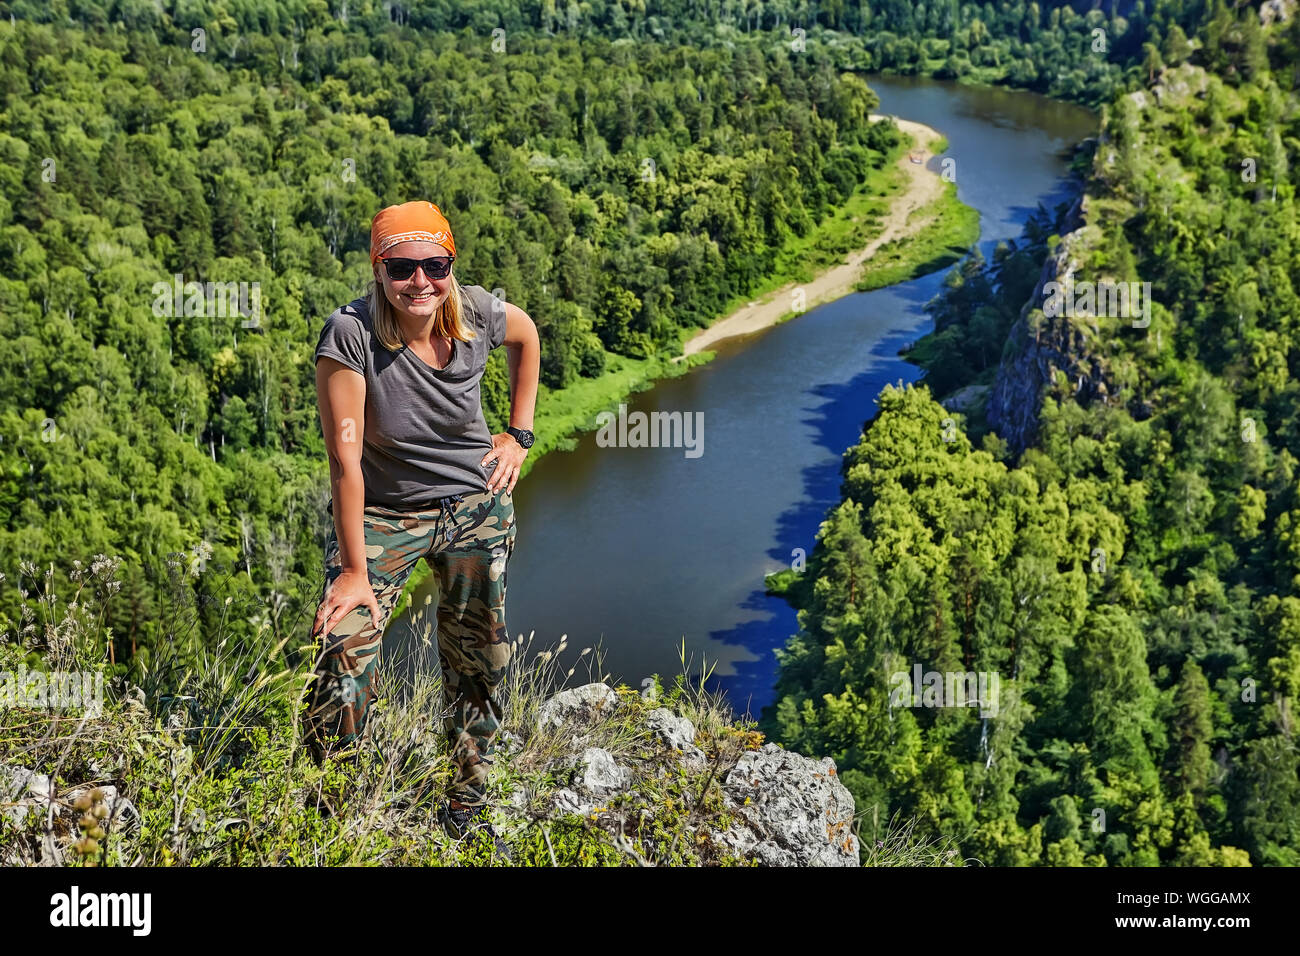 Eine lächelnde Frau in einem bandana und Sonnenbrille steht auf einem Berg, vor dem Hintergrund einer ruhigen Wald Fluss unten, ein Wanderer ist enga Stockfoto